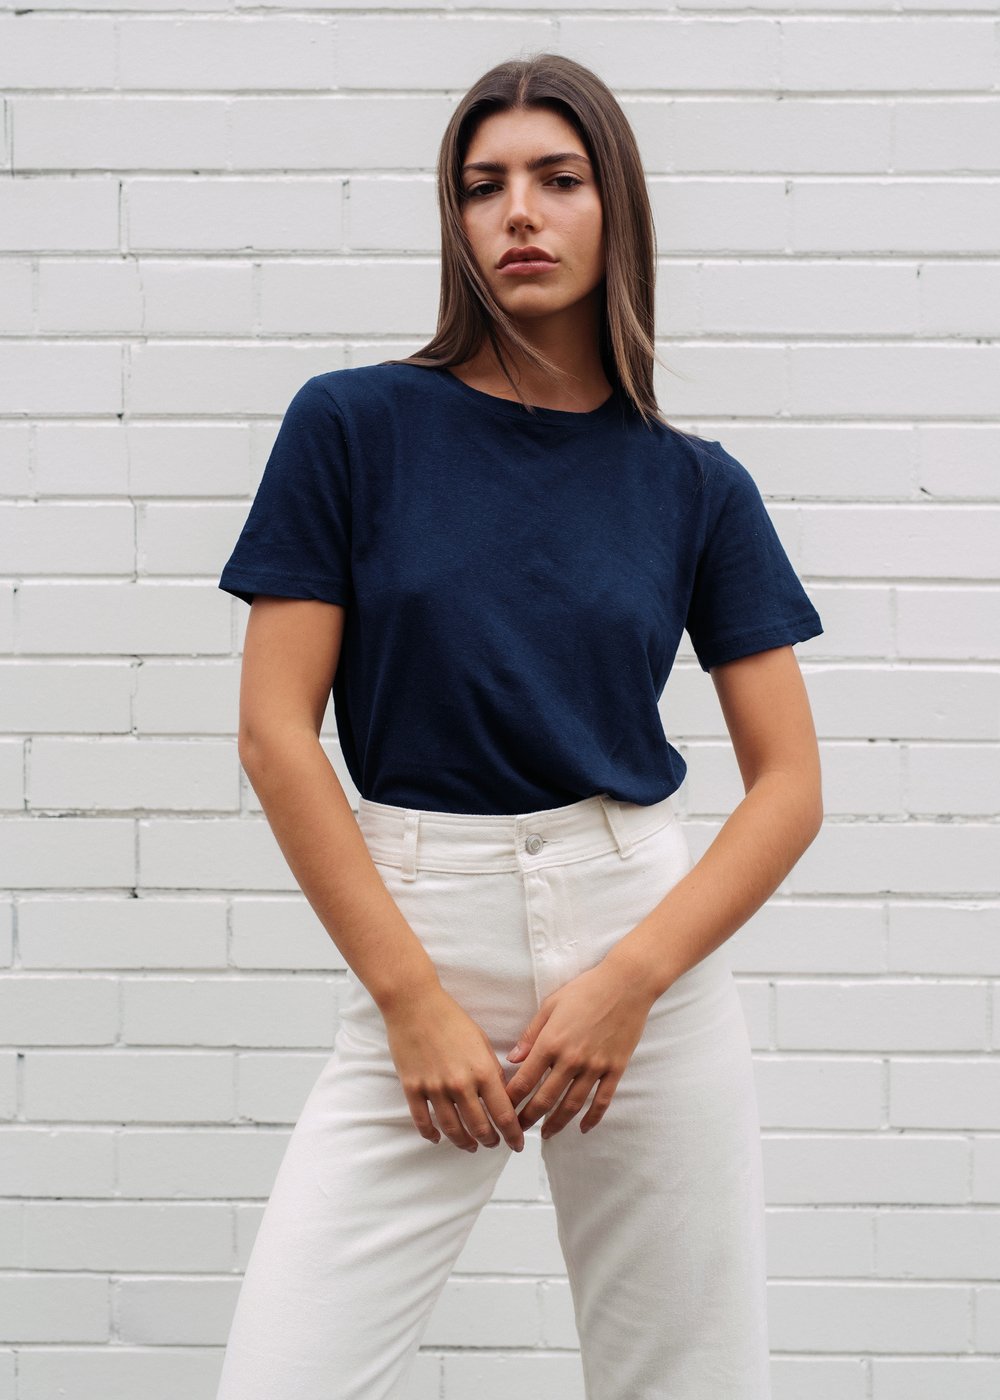 Women's Hemp T-Shirt – Navy Sustainable & Ethical Tees Basics — Hemp Clothing Australia